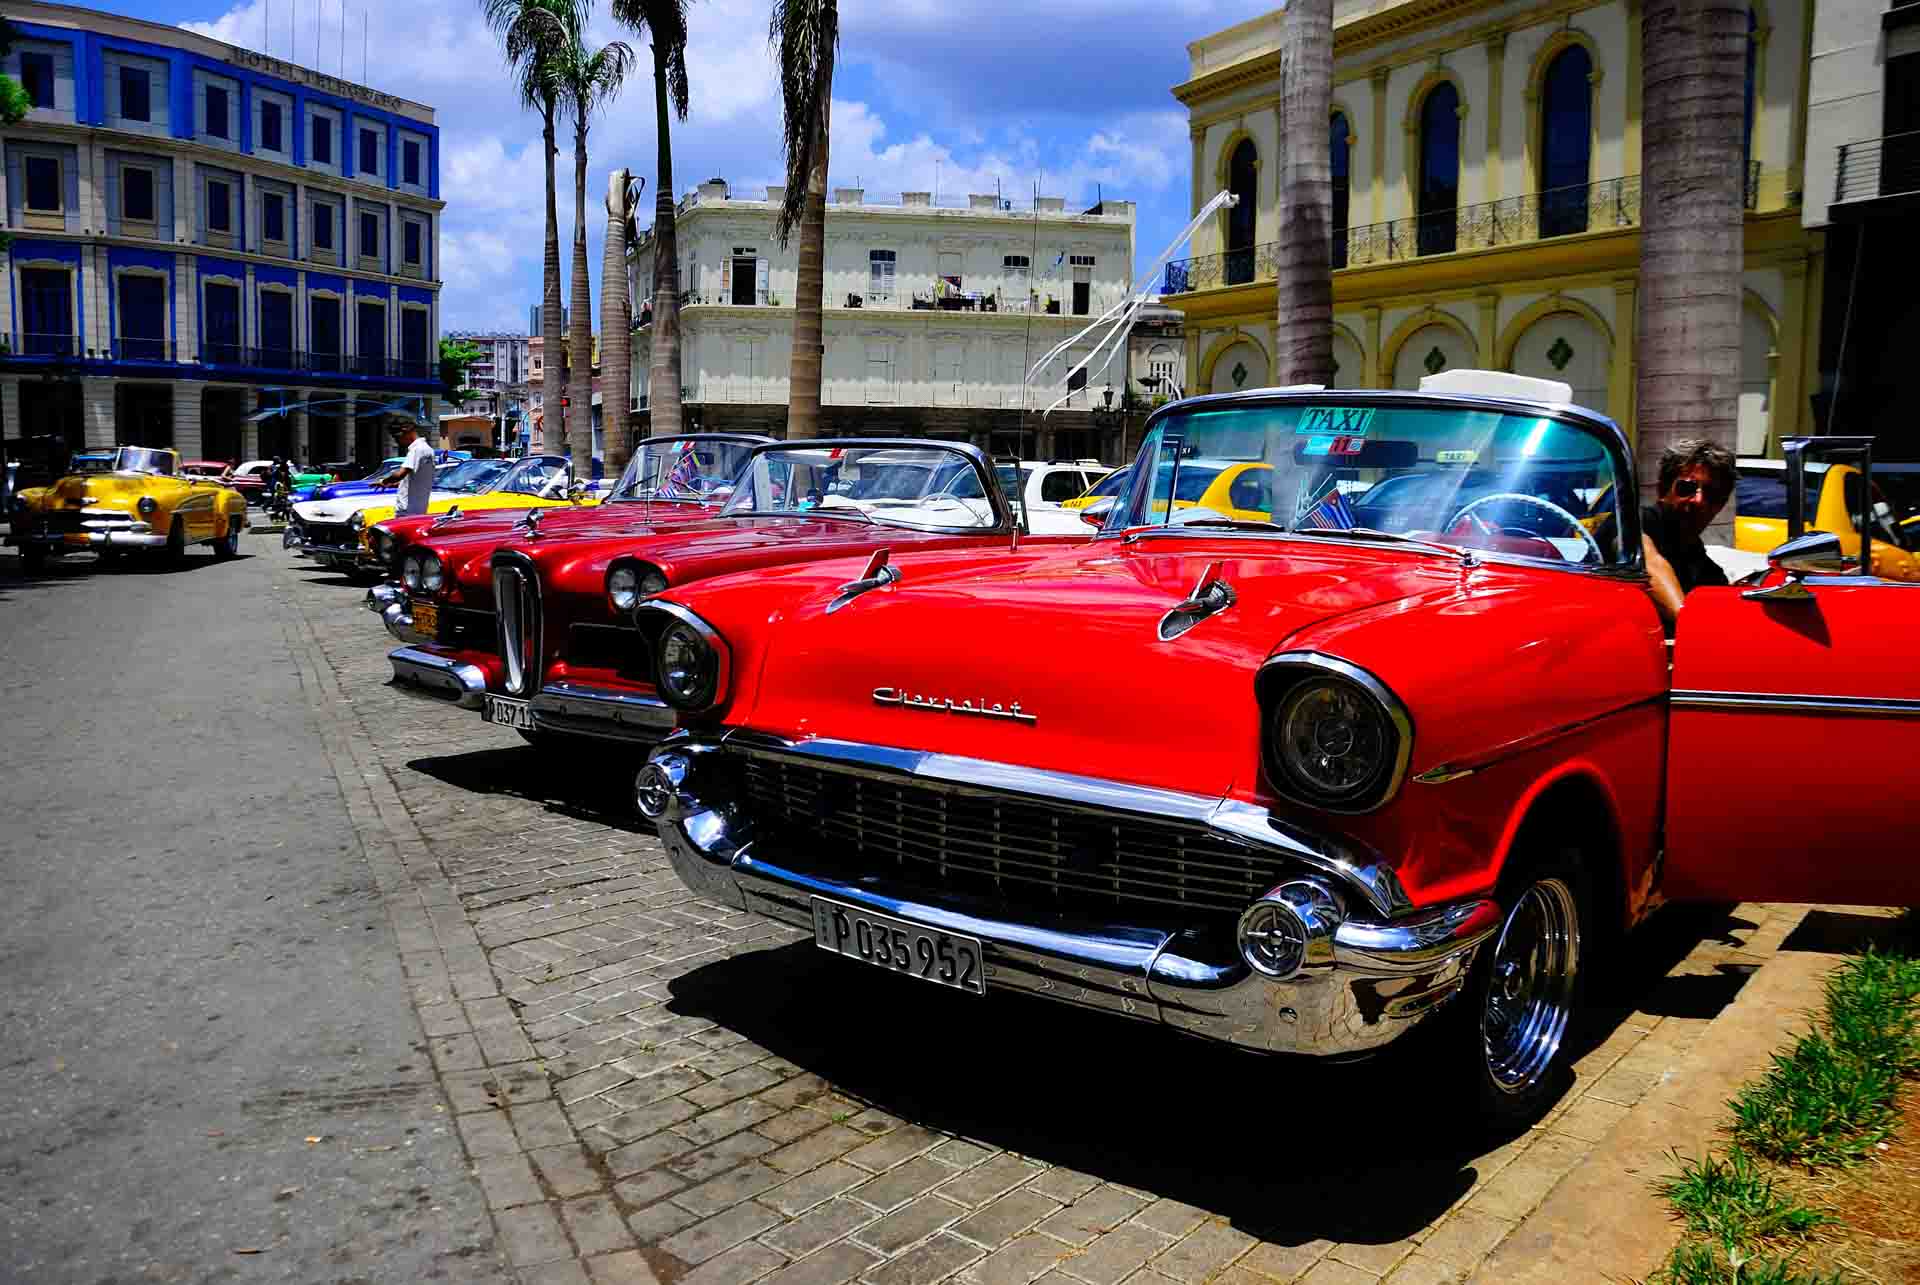 Havana Cuba Vintage Car 2, havana, cuba, pescart, photo blog, travel blog, blog, photo travel blog, enrico pescantini, pescantini